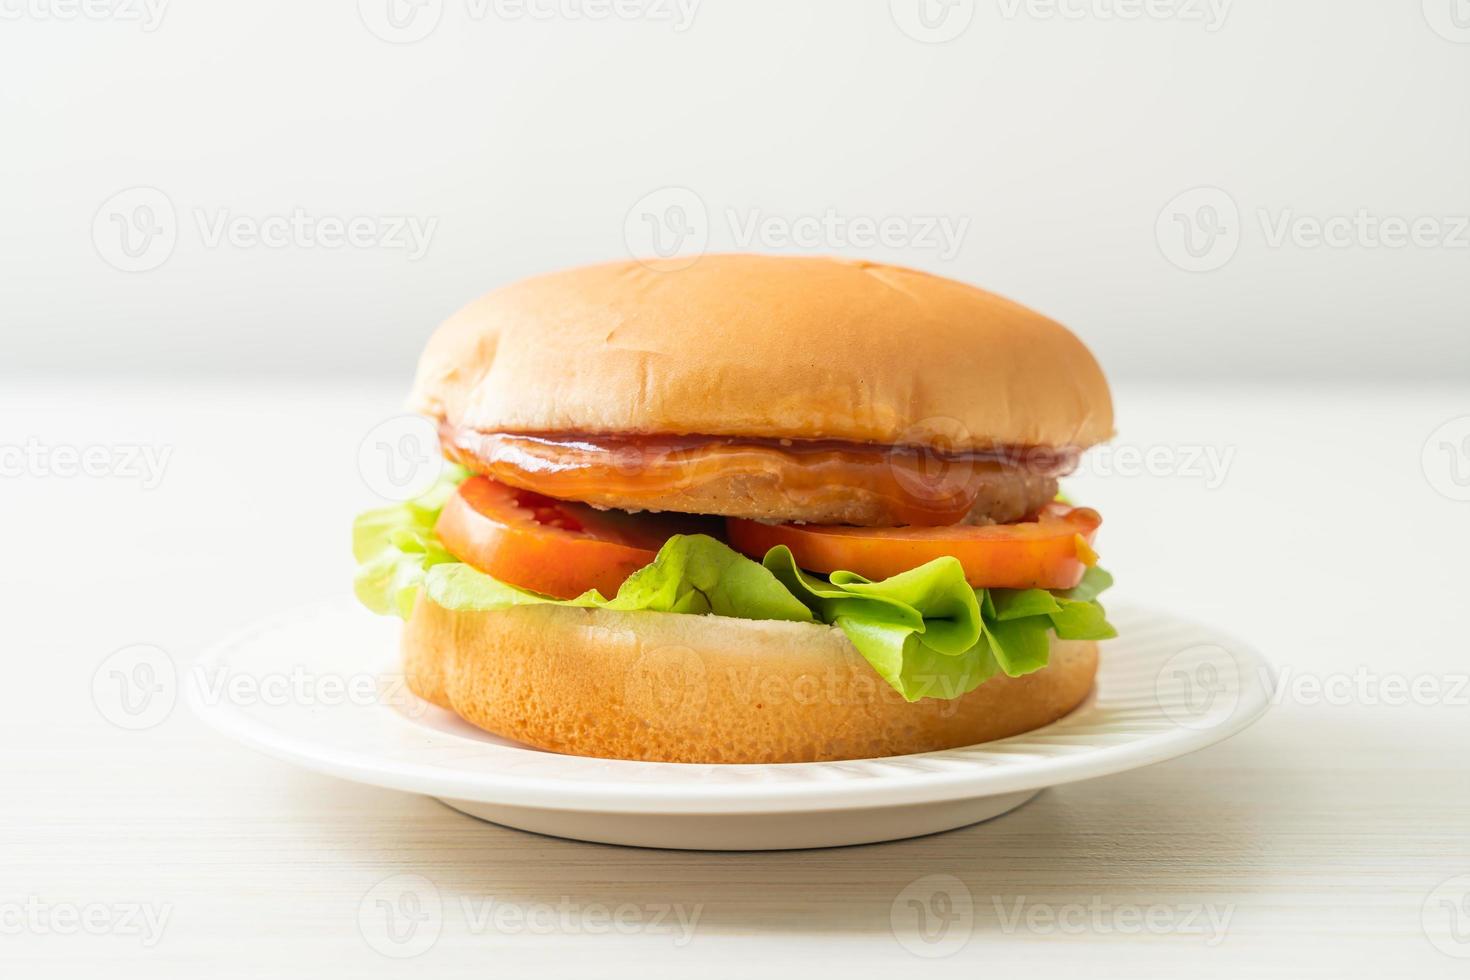 burger de poulet avec sauce sur plaque blanche photo